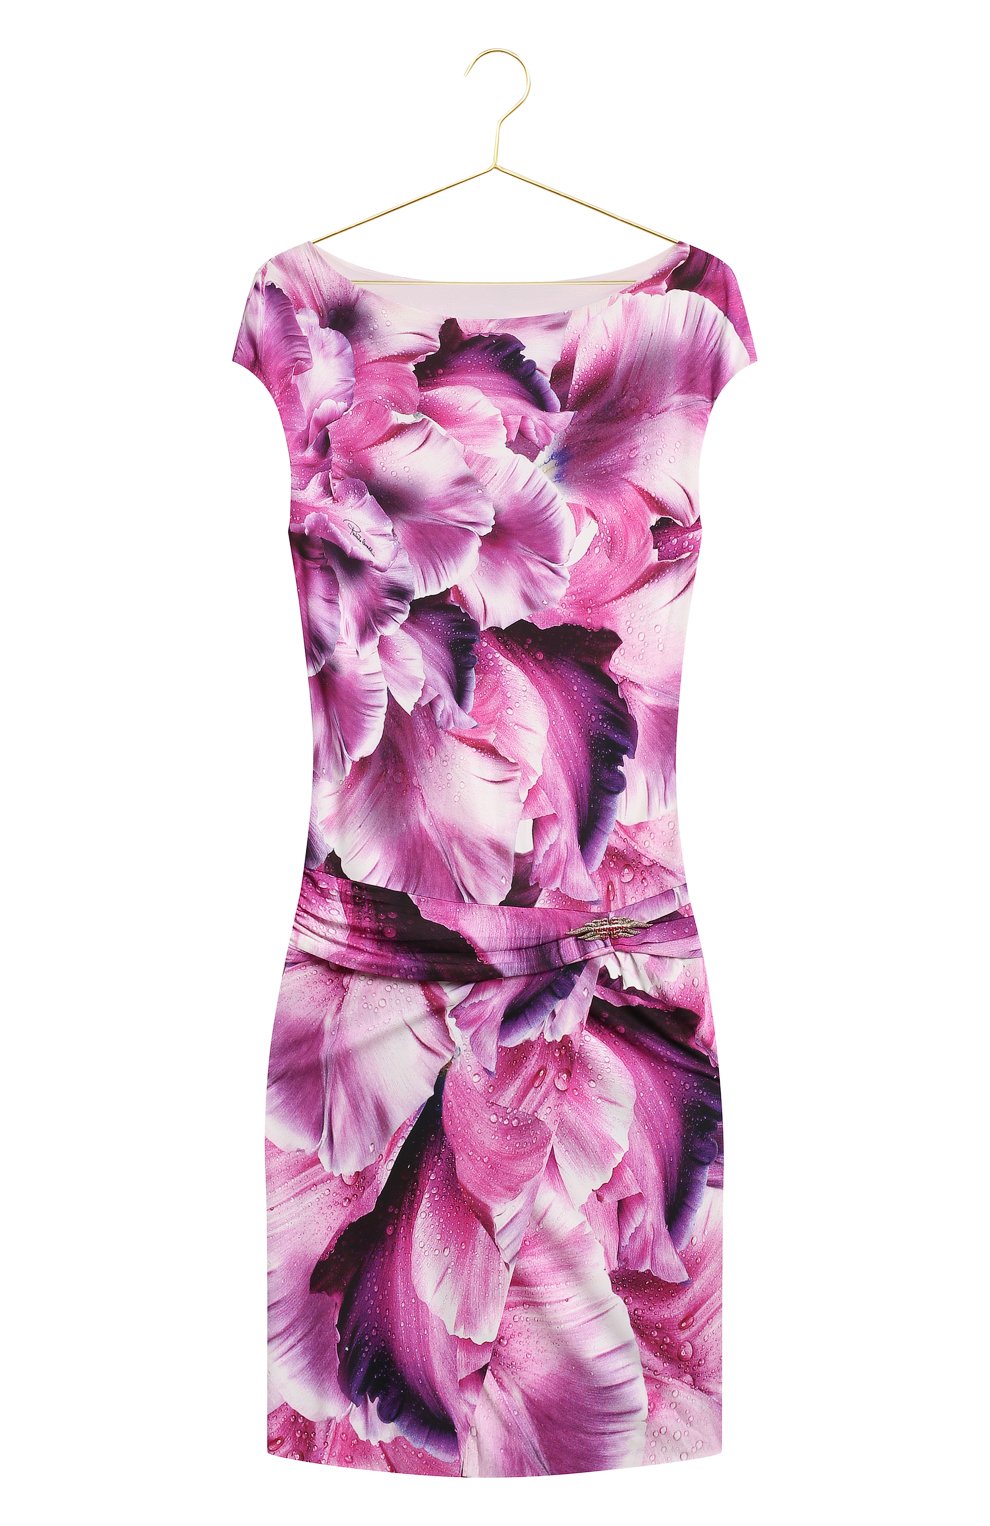 Платье из вискозы | Roberto Cavalli | Розовый - 1